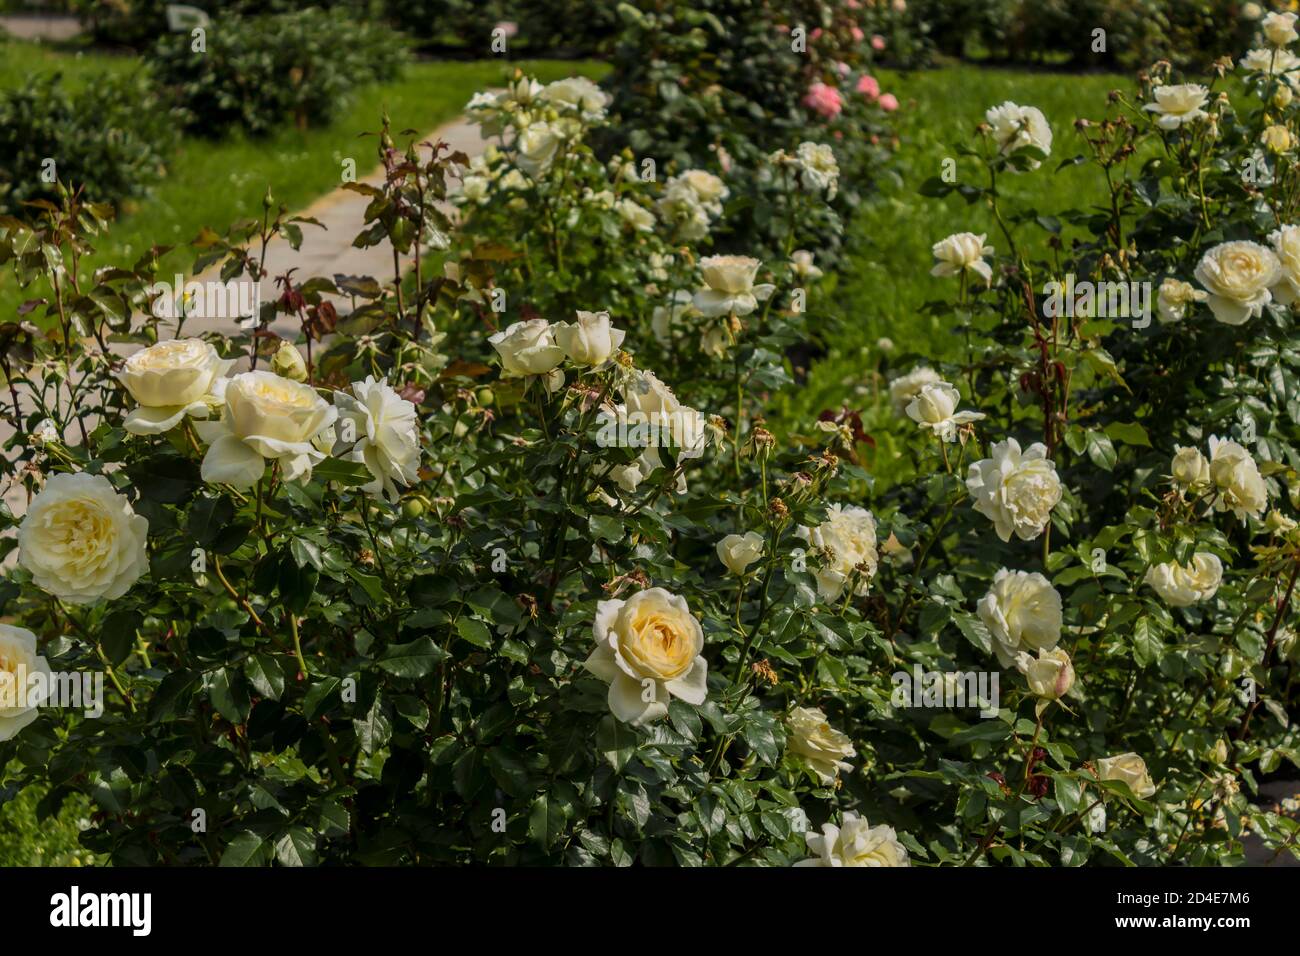 Fleurs roses blanches sur les buissons avec des feuilles vertes. Jardin botanique au milieu de l'été. Banque D'Images